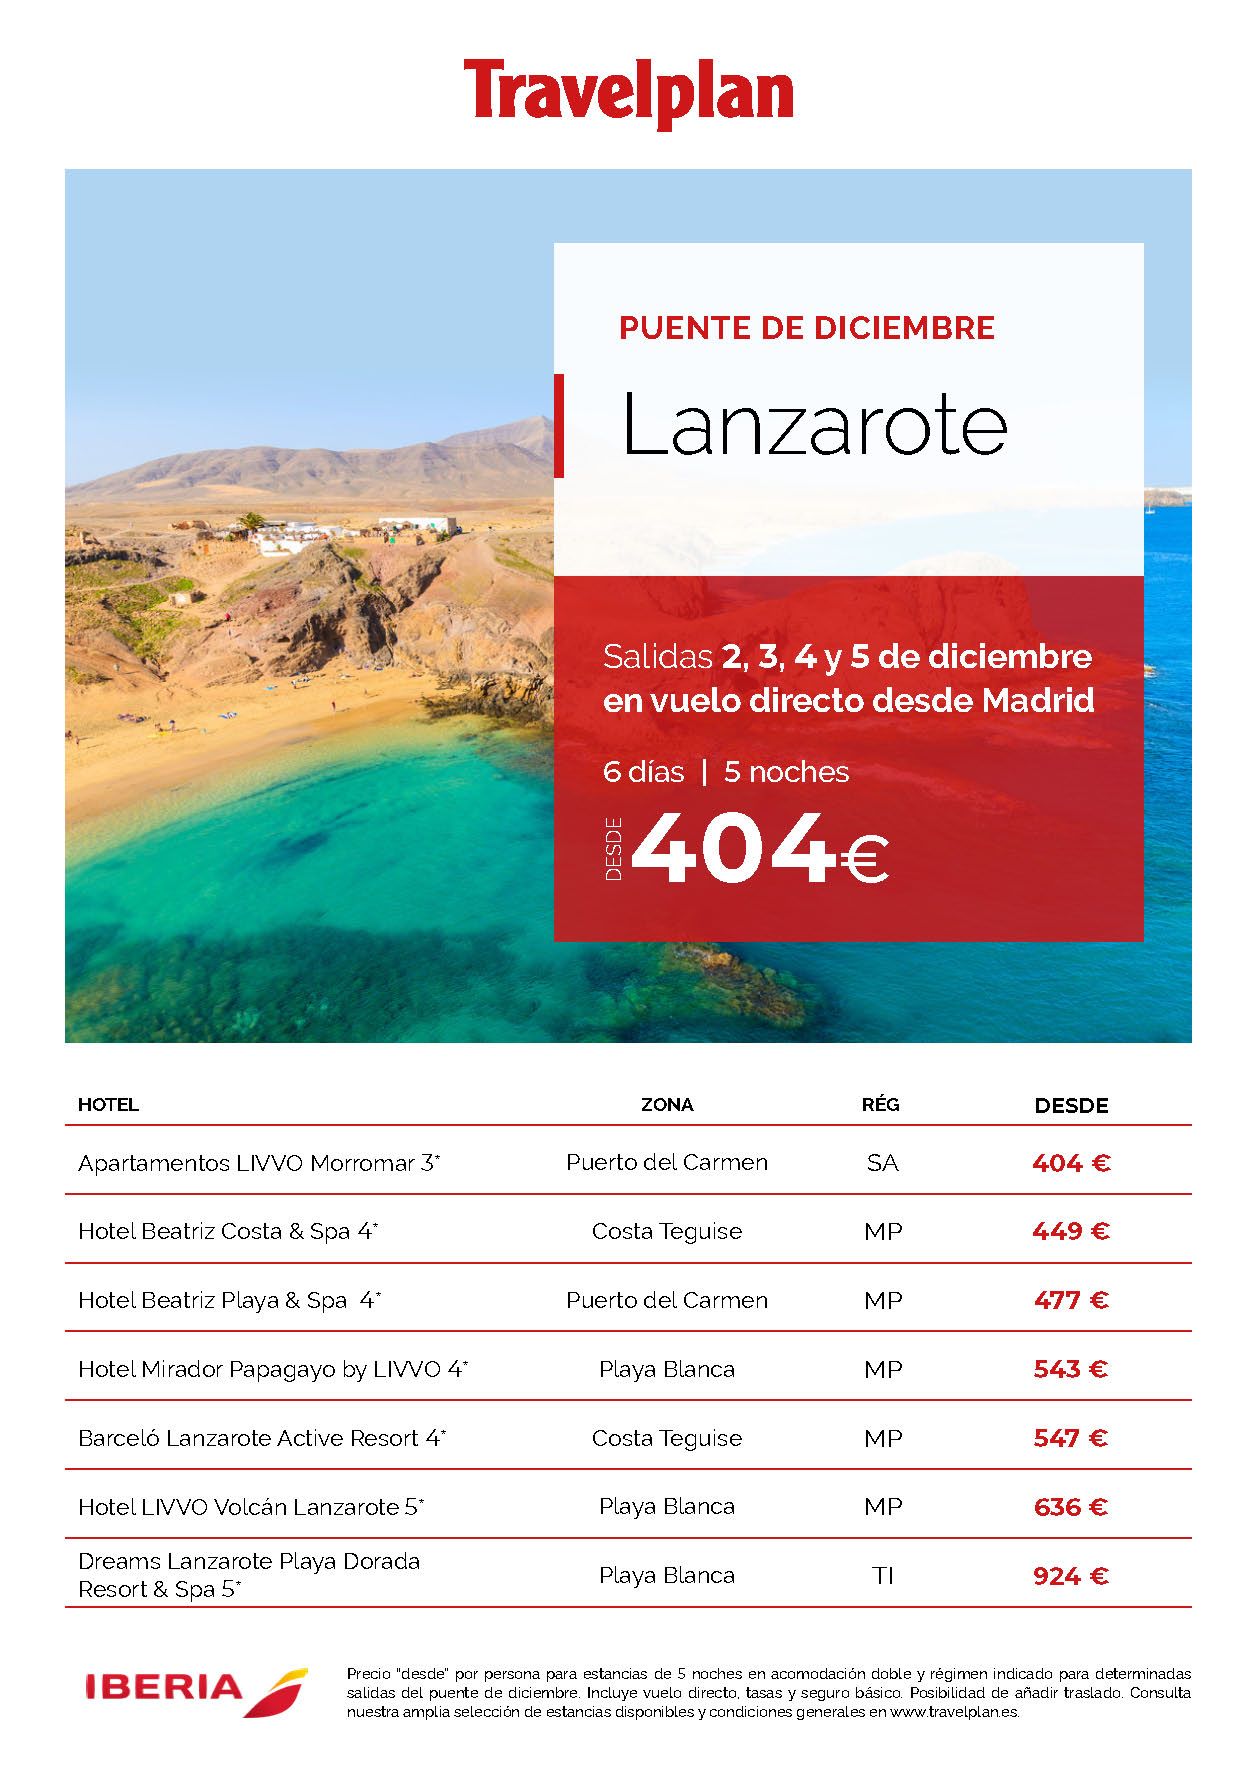 Oferta Travelplan Puente de Diciembre 2023 en Lanzarote 6 dias Media Pension salidas 2 3 4 y 5 Diciembre vuelo directo desde Madrid